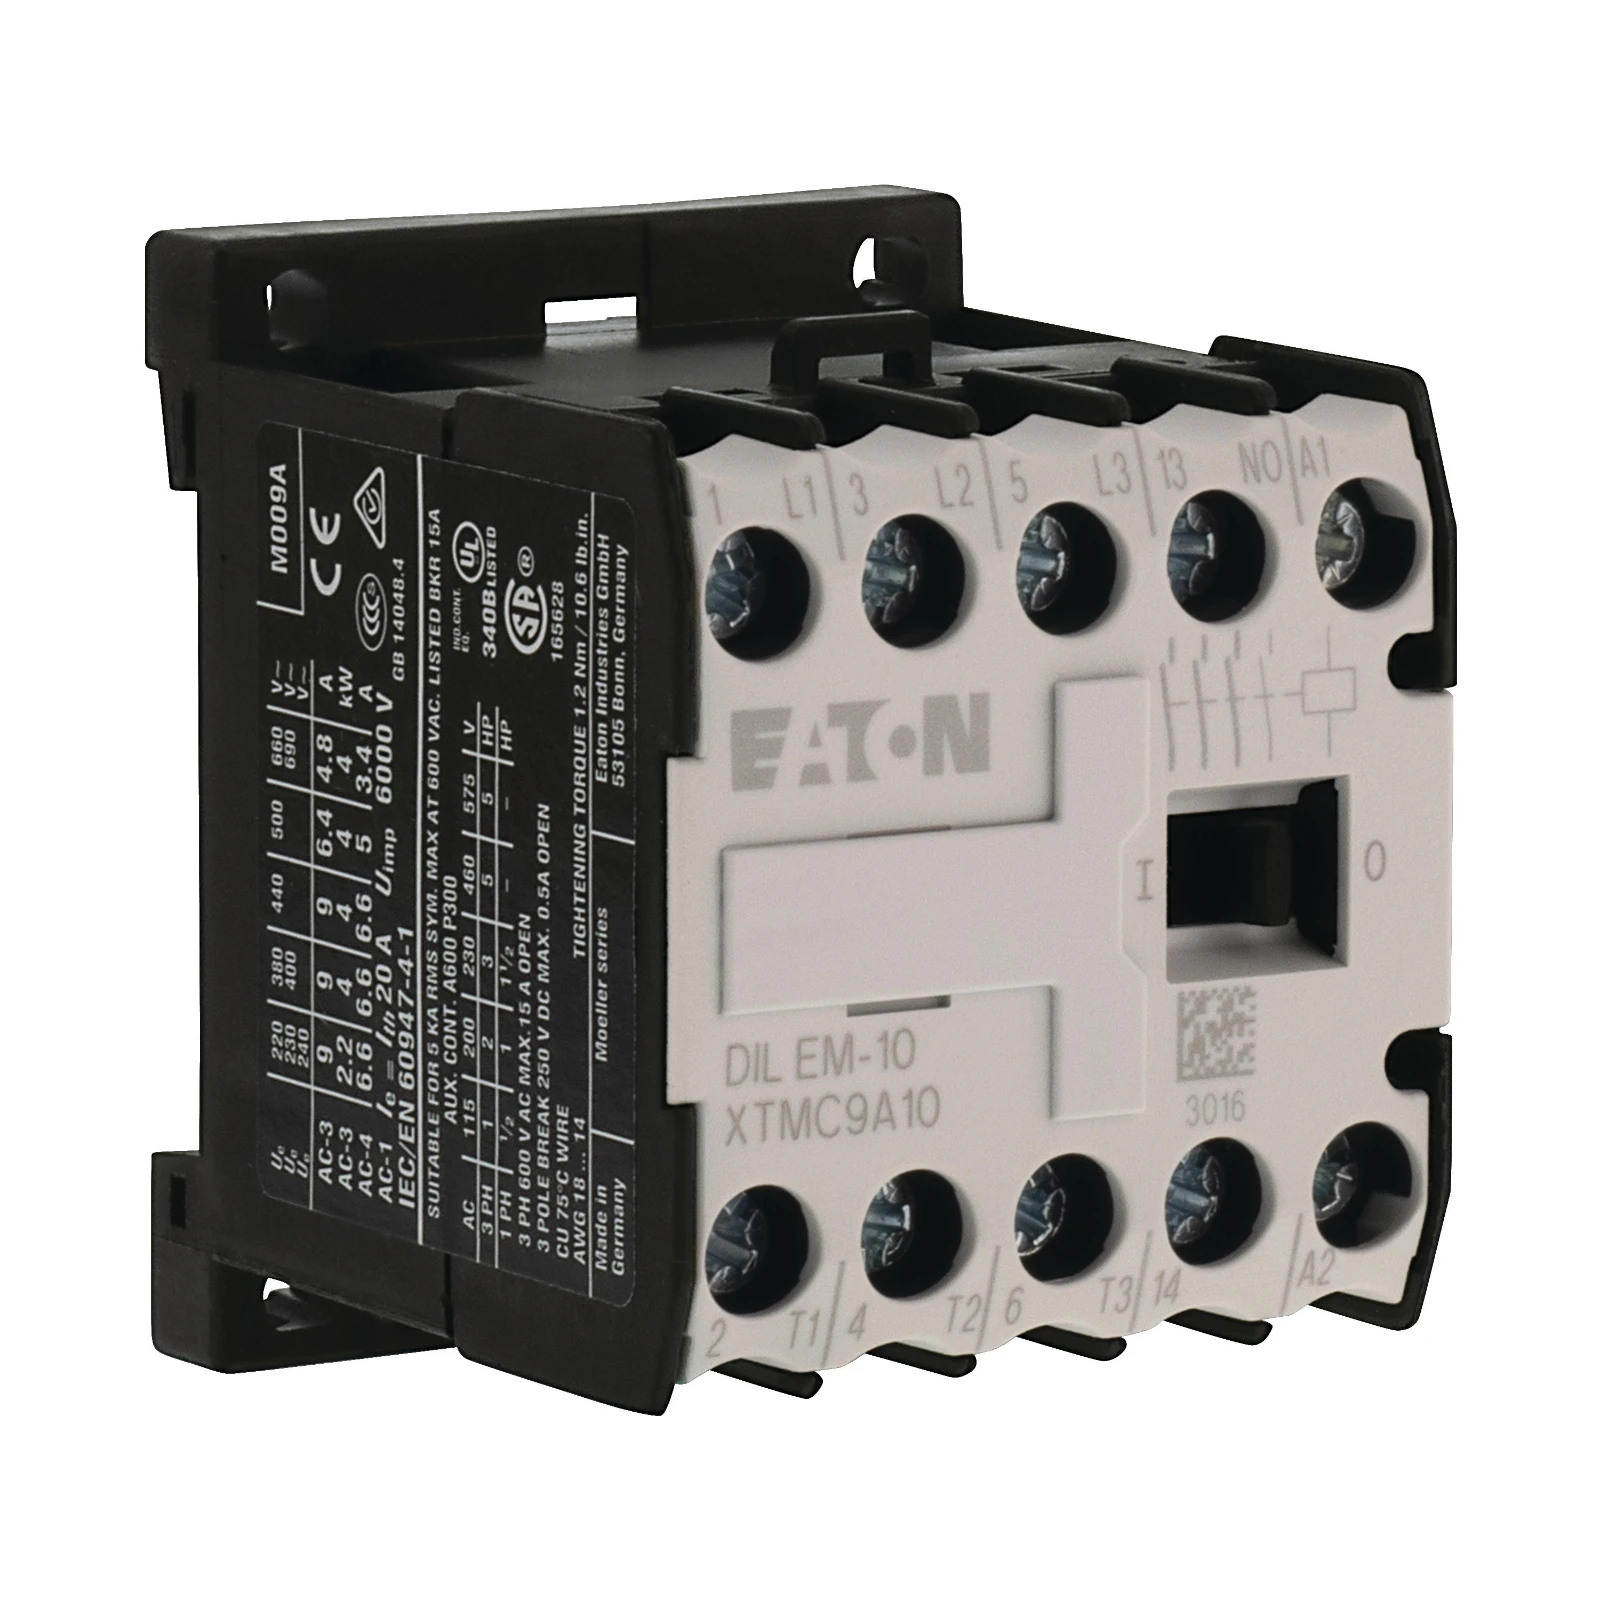 2060795 - Eaton DILEM-10-G(48VDC)